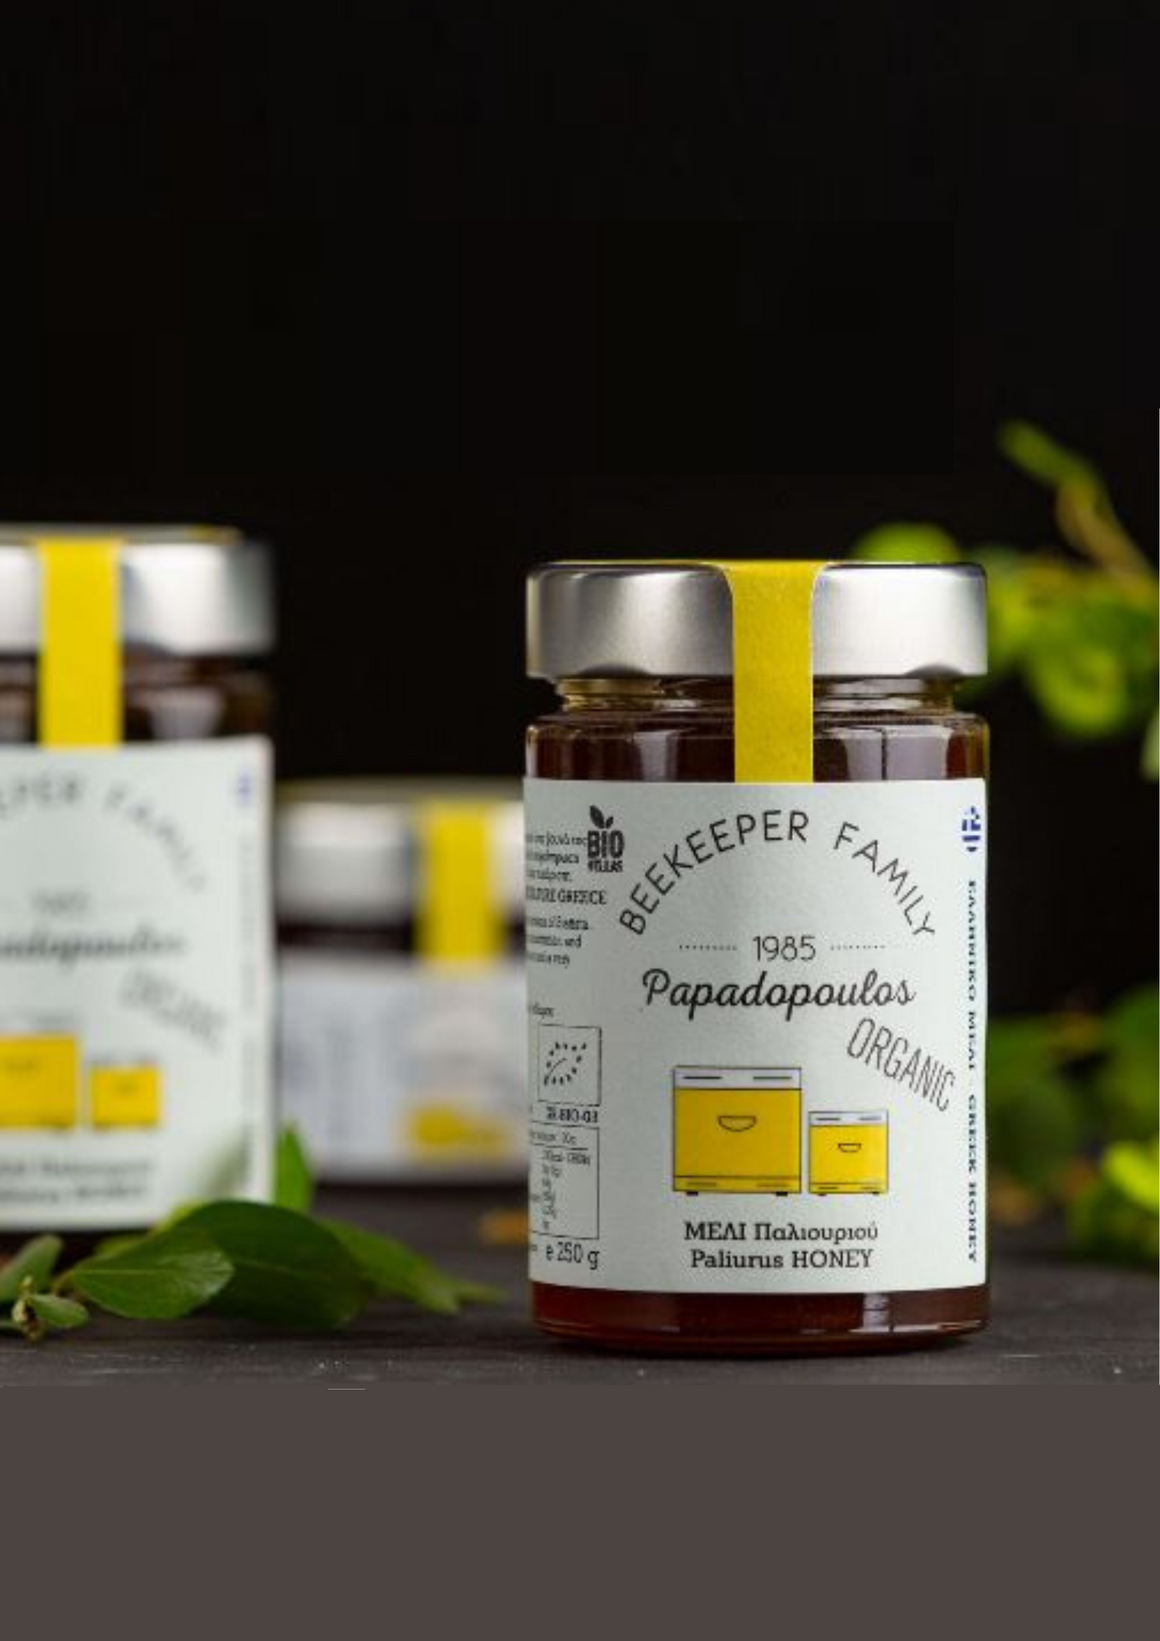 Μέλι βιολογικό Παλιούριου "BEEKEEPER"